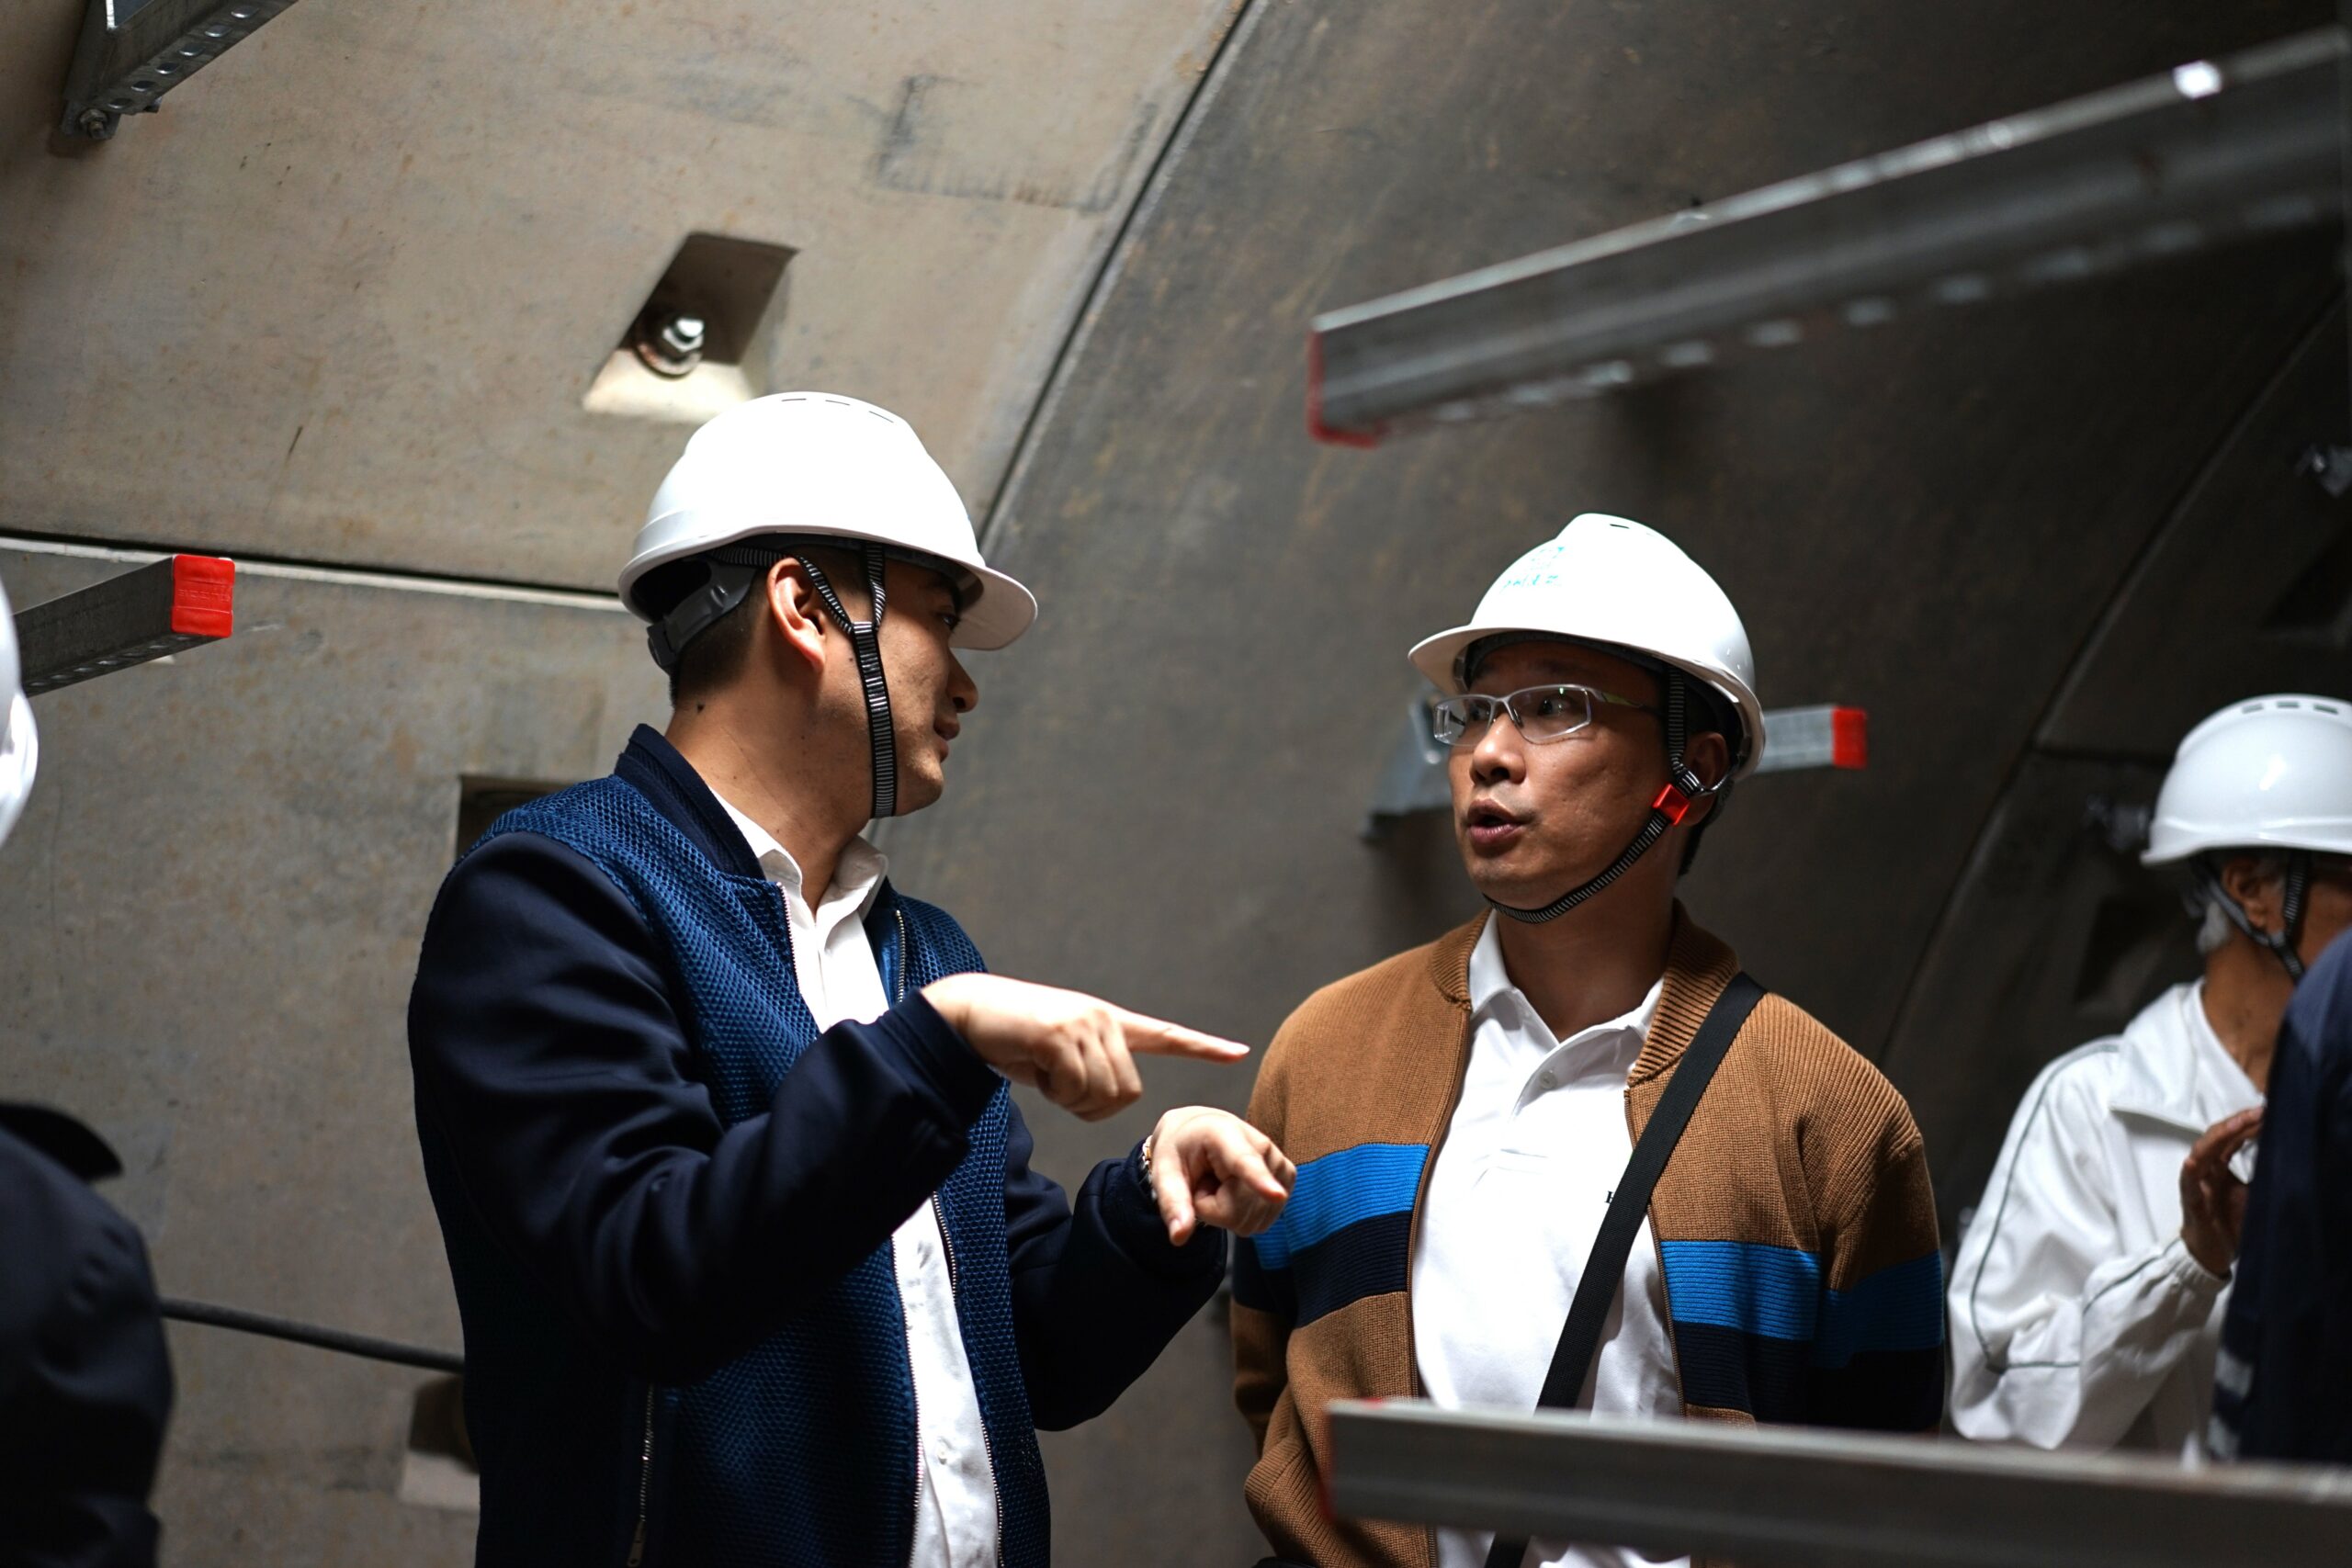 廣州市建築集團有限公司建築工業化辦公室副主任過勇先生(左)與會員王益強先生(右)於地下管道內就項目細節進行交流